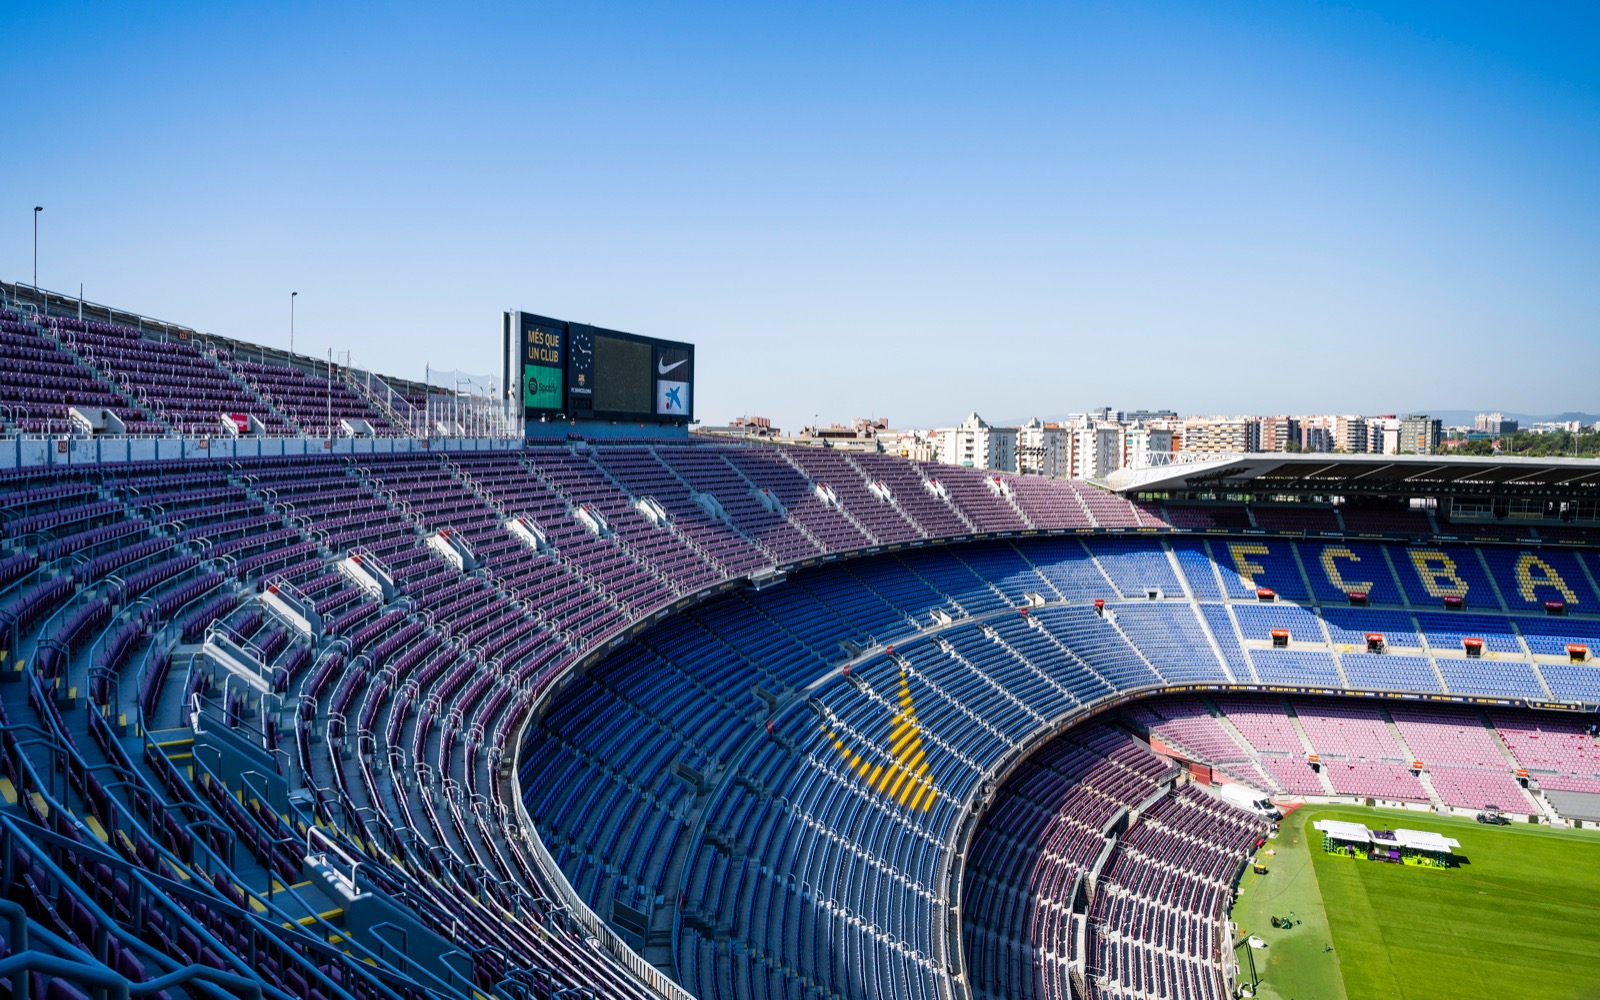 El Barça las obras Spotify Camp Nou con un derribo parcial de la tercera gradería coincidiendo con el parón del Mundial Qatar